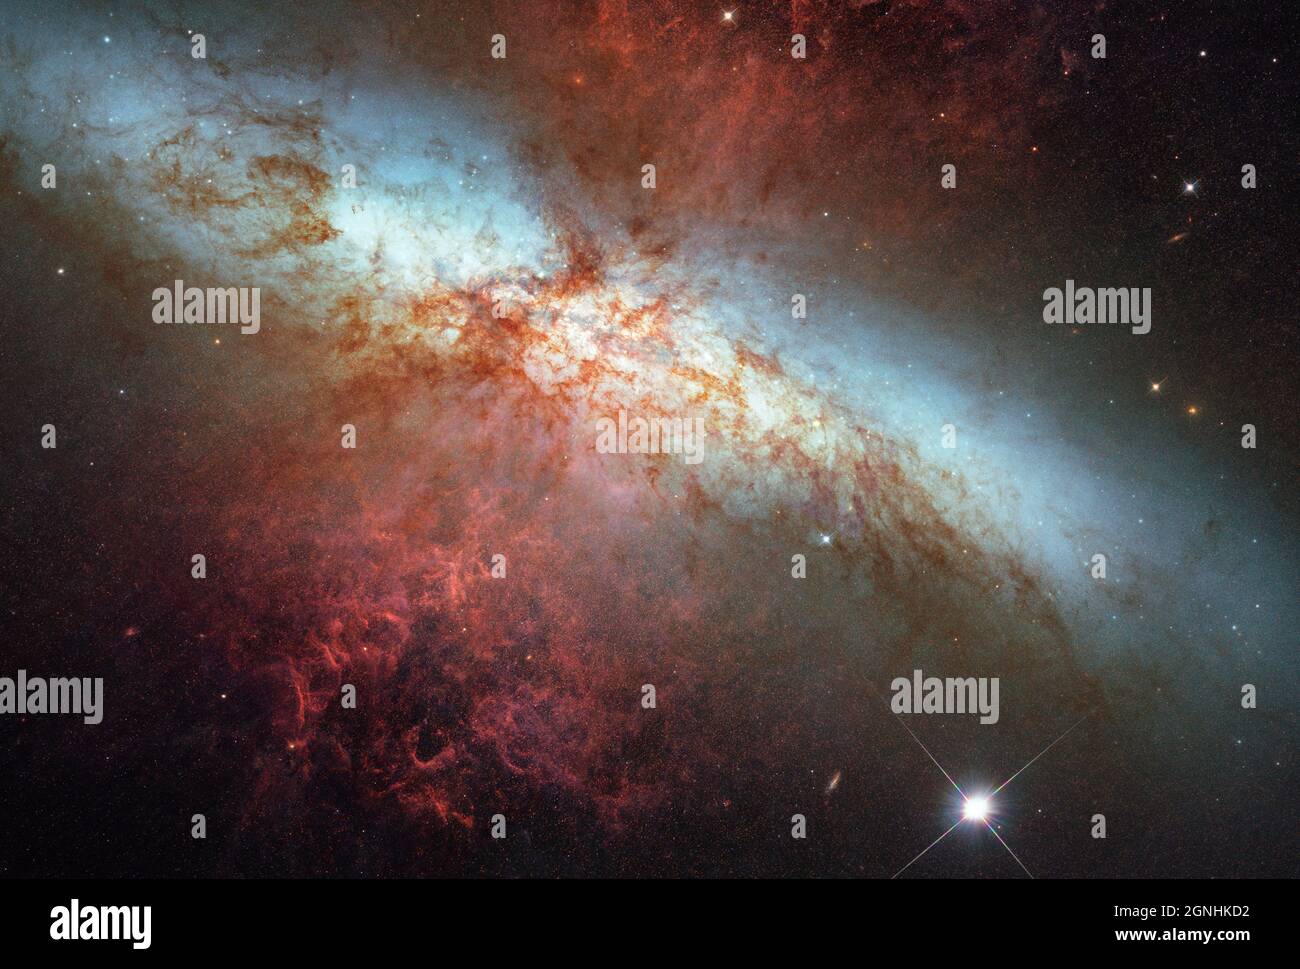 Messier 82 (noto anche come NGC 3034, Cigar Galaxy o M82) è una galassia starburst a circa 12 milioni di anni luce di distanza nella costellazione Ursa Major. La stella luminosa nella parte inferiore dell'immagine è una supernova di tipo 1a denominata SN2014J. Fonte immagine NASA/ESA Hubble Space Telescope Foto Stock